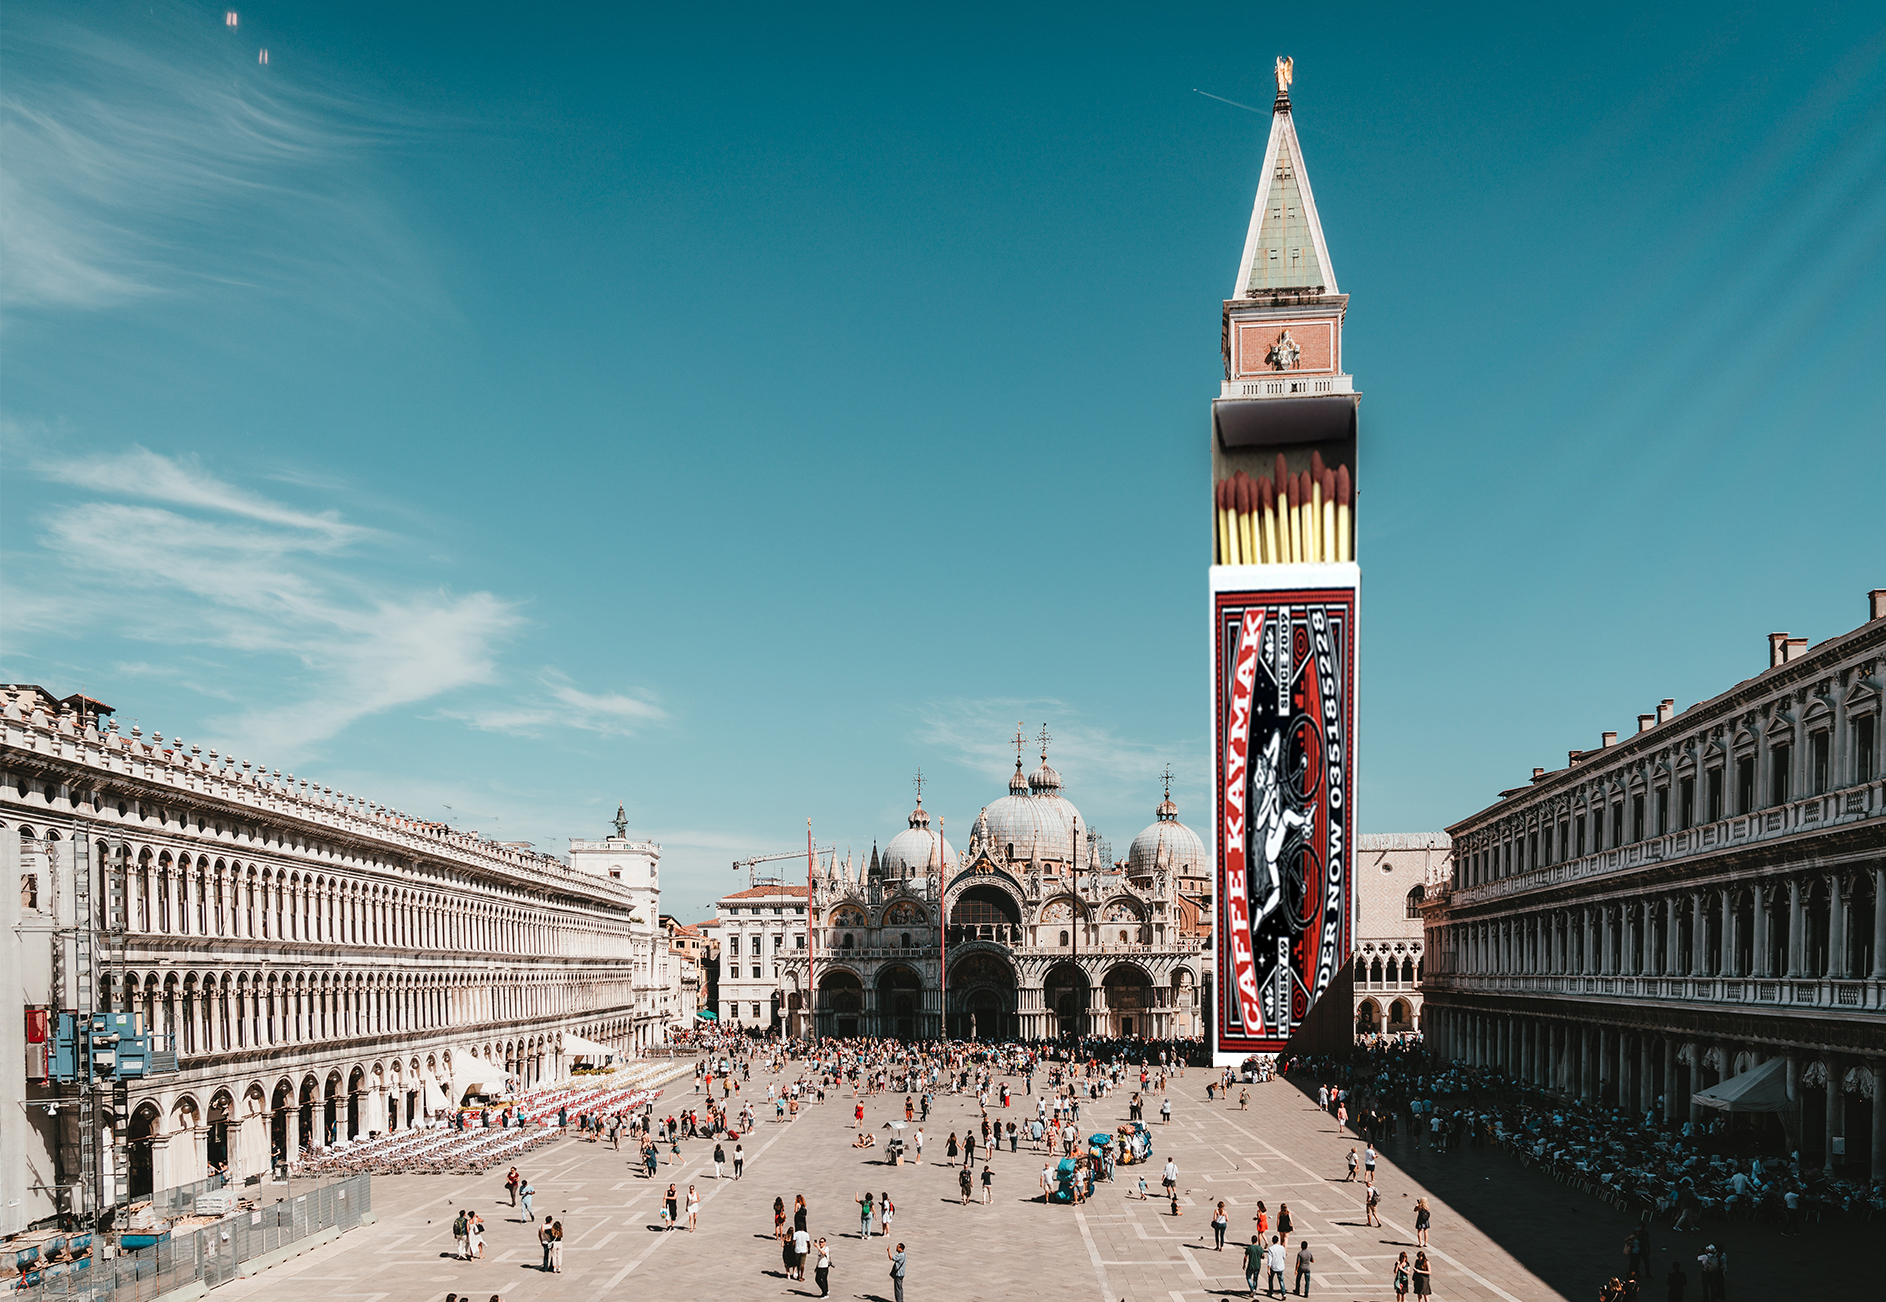 בינאלה בונציה-אמנות בקופסאות גפרורים